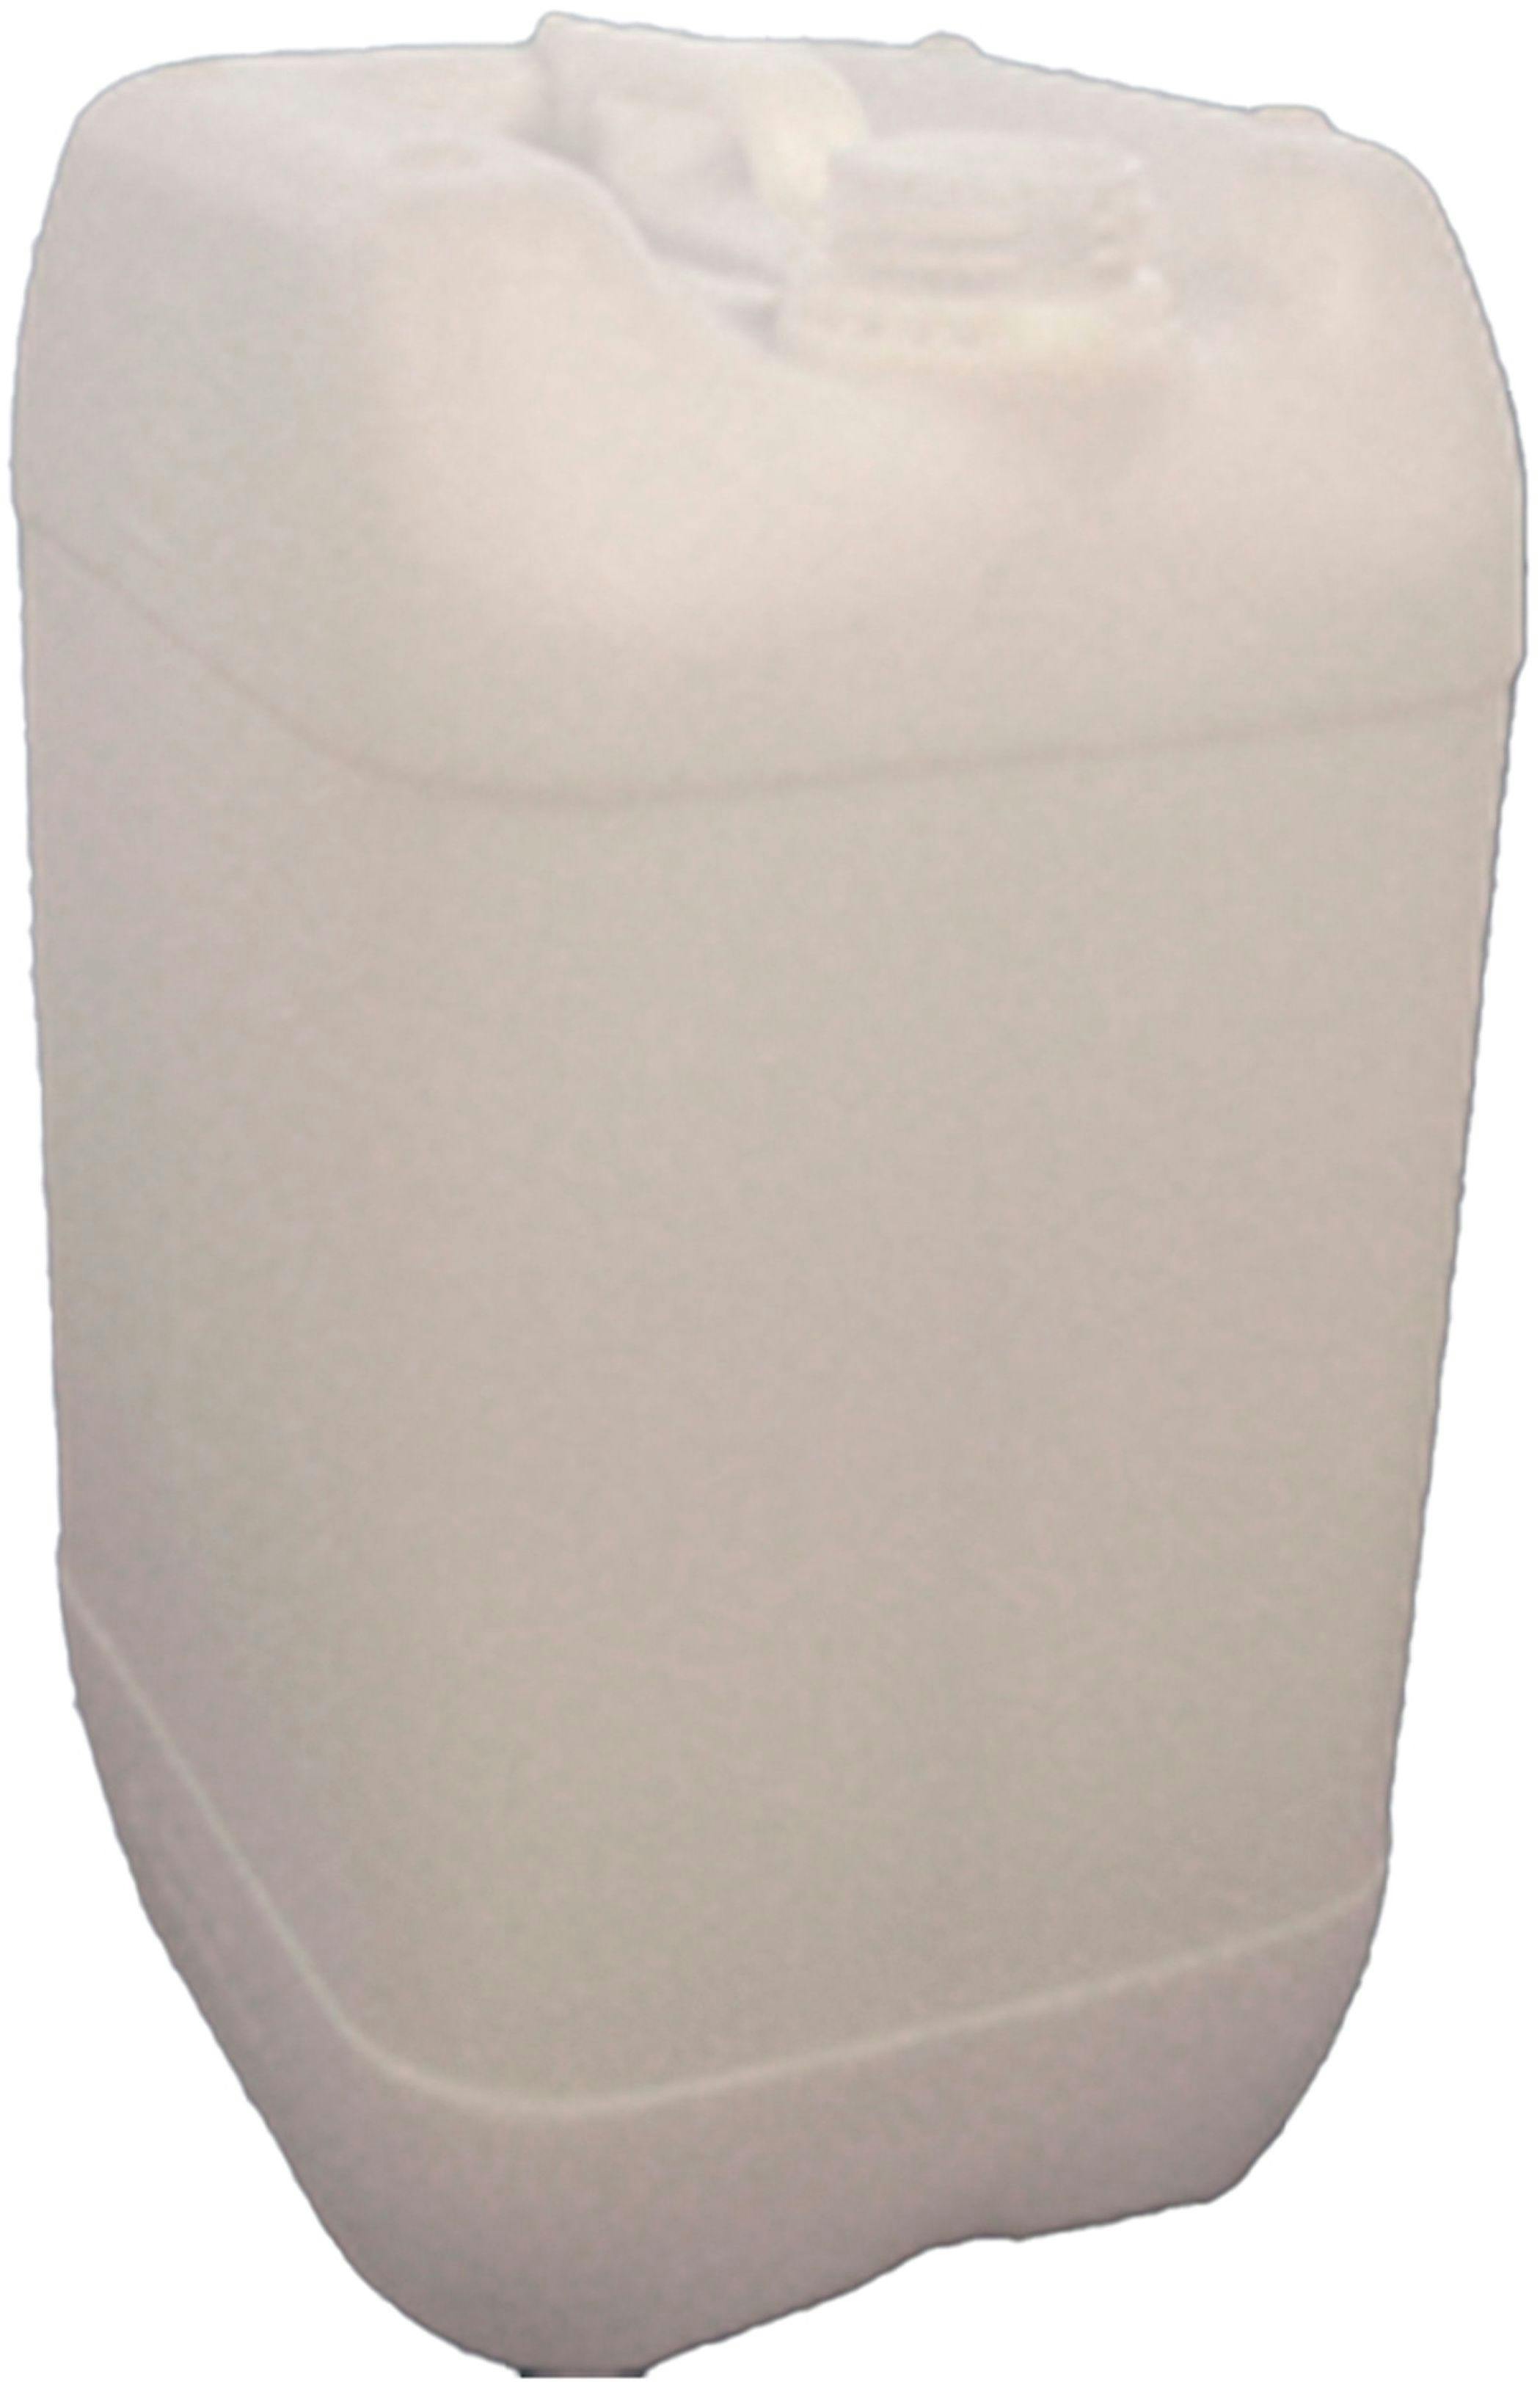 Jerrican stapelbar HDPE 25 Liter natur zugelassen  D61